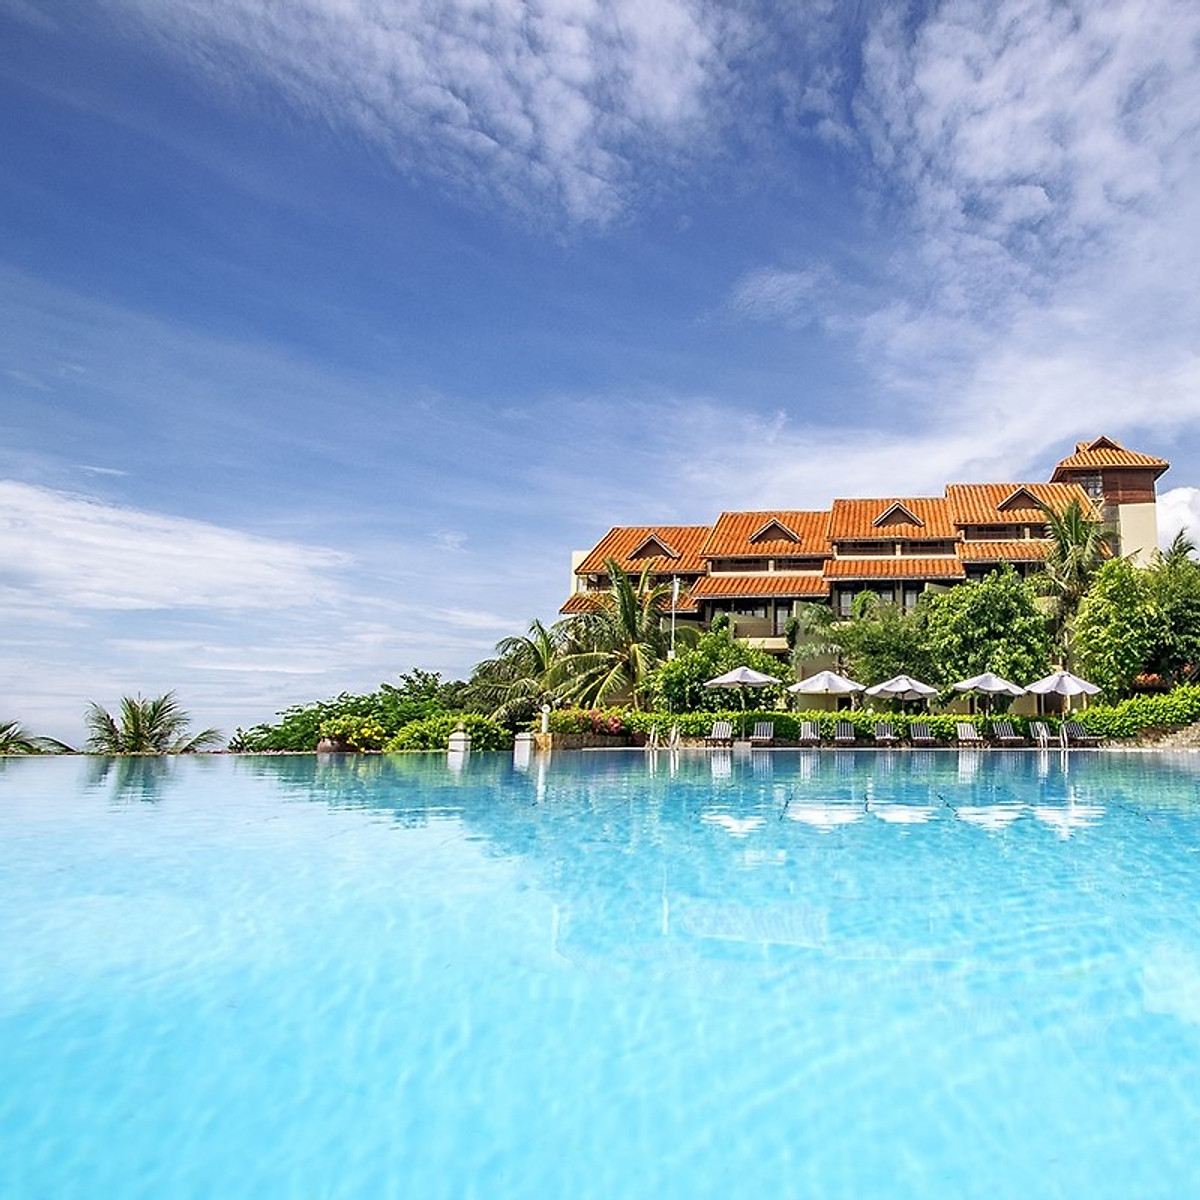 Romana Resort 4* Mũi Né Phan Thiết - Ăn 03 Bữa, Phòng Hướng Biển, Hồ Bơi Lớn, Bãi Biển Riêng